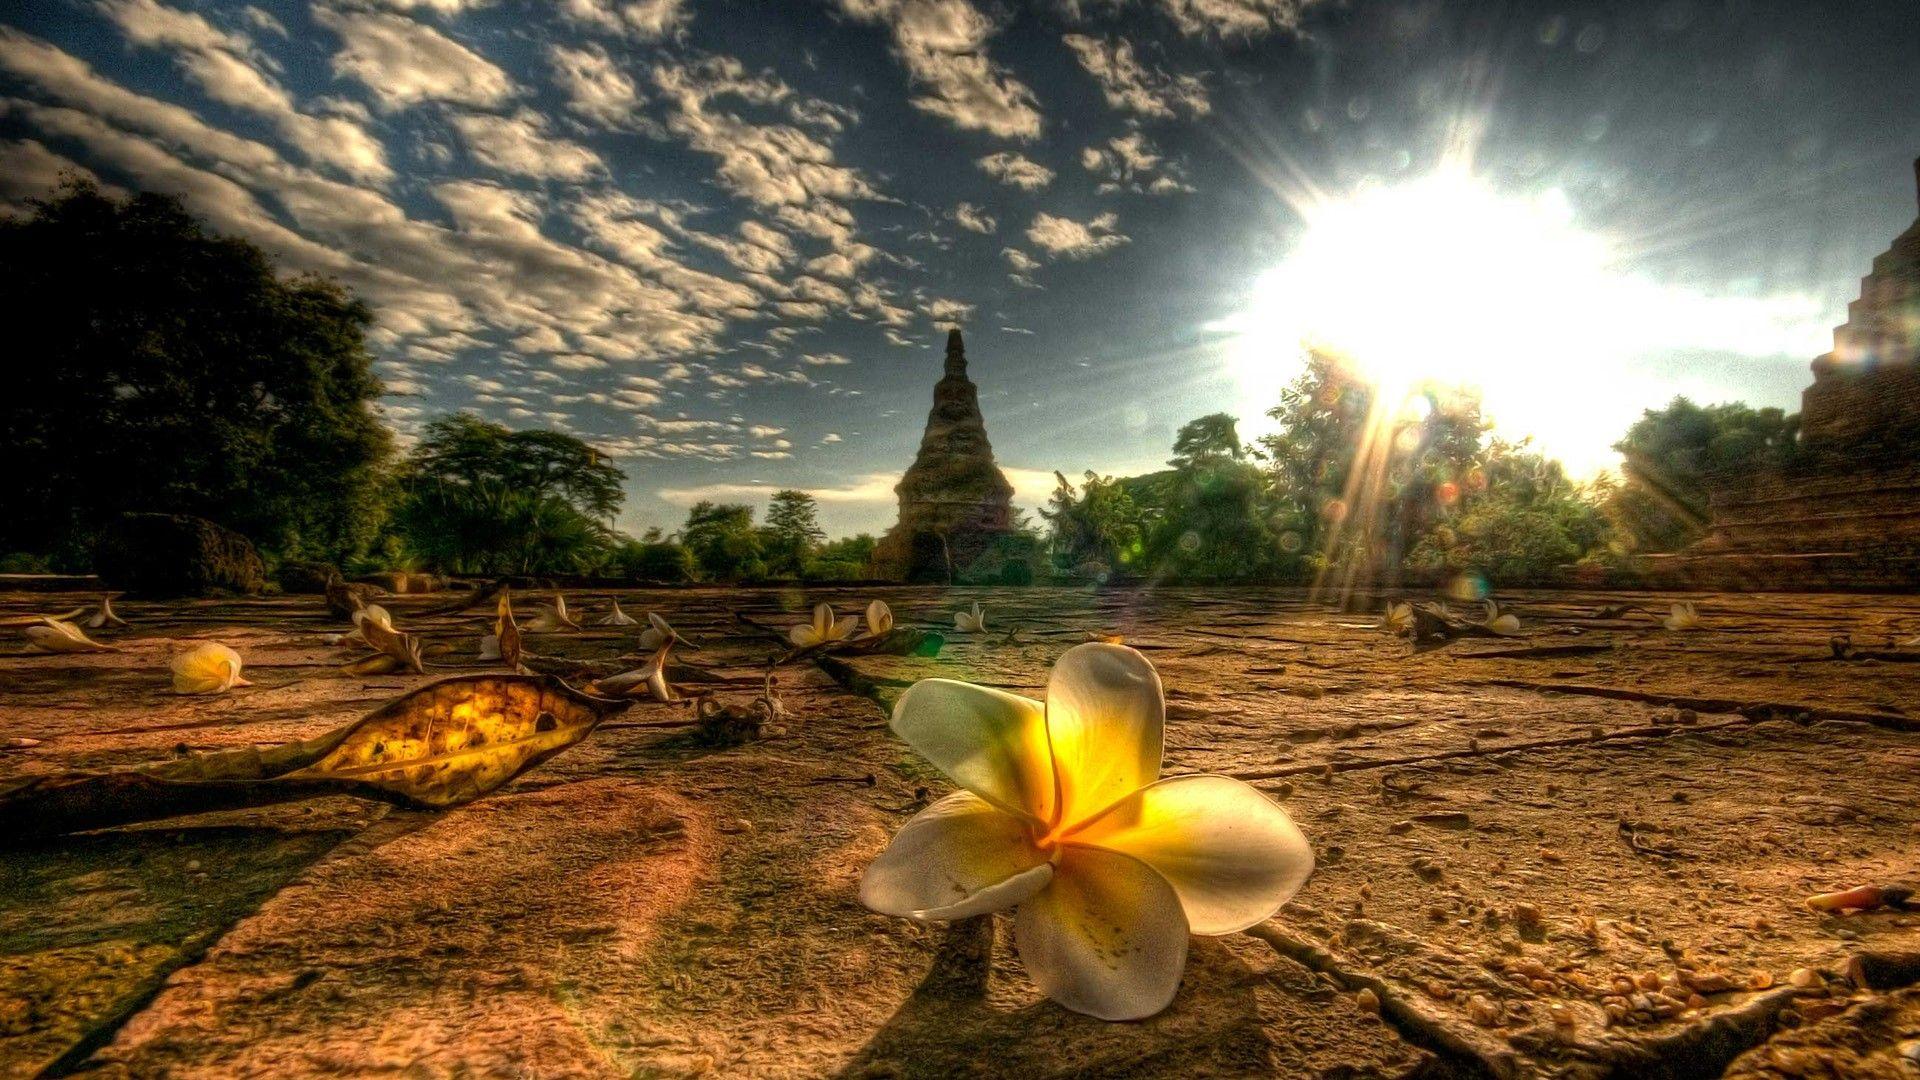 Hình nền HD 1920x1080 Thái Lan Beauty Place.  Chào mừng đến với StarChop